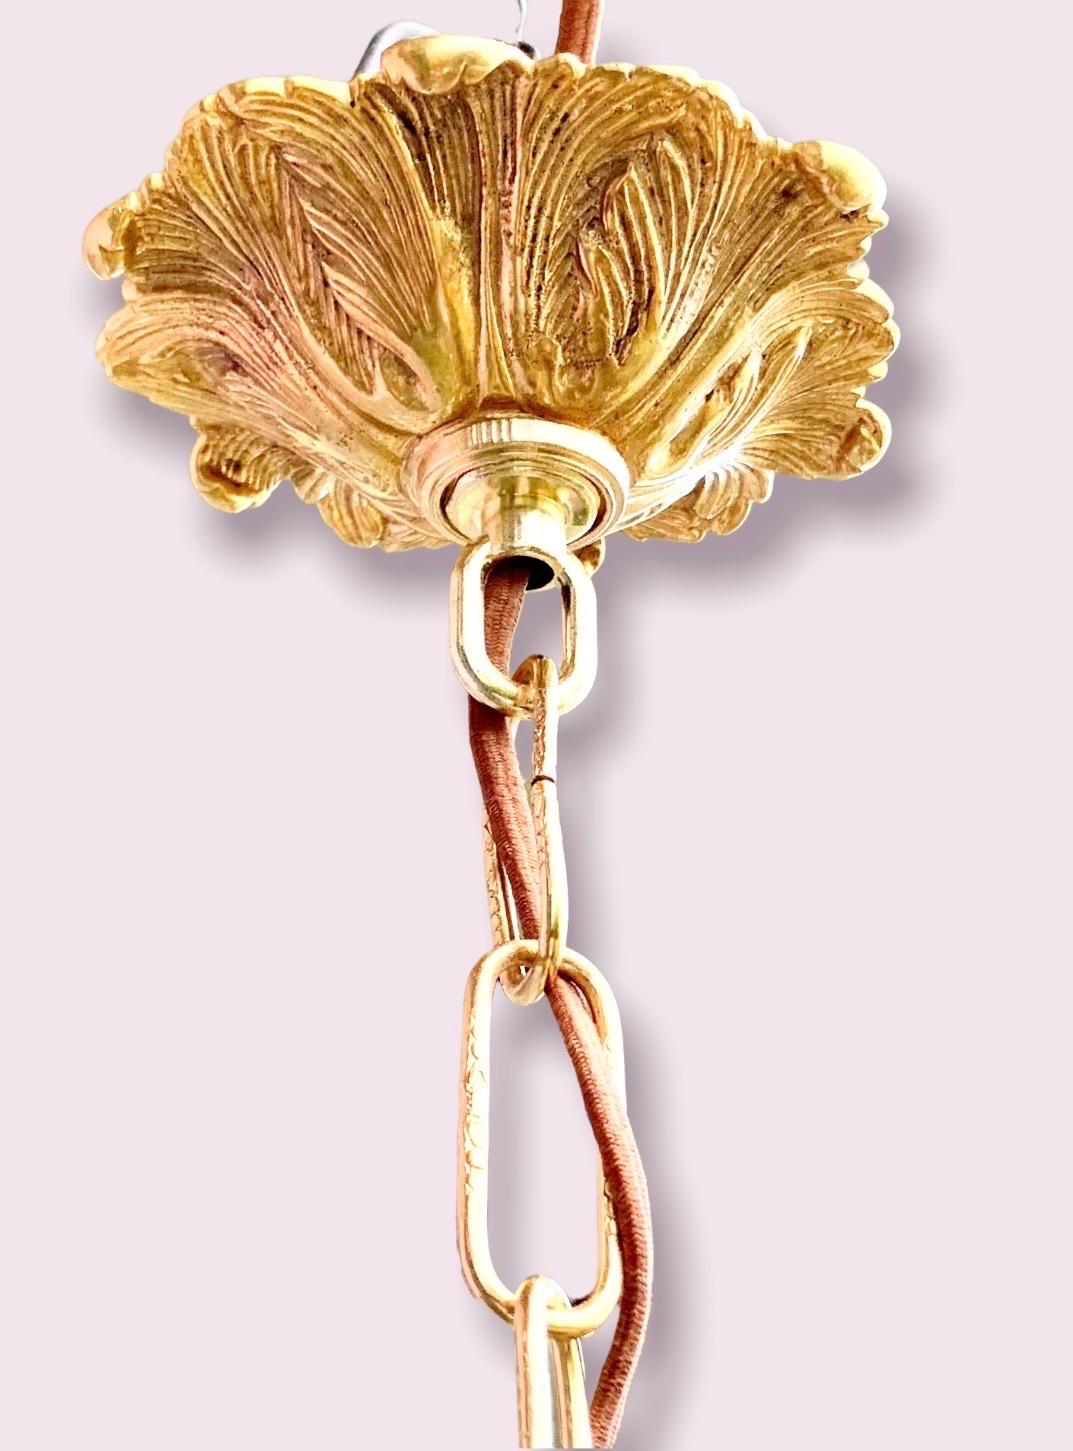 Eine antike fünfeckige Laterne aus vergoldetem Messing und Glas, Anfang des 20. Jahrhunderts, mit einer konischen Form und einem mittleren Arm, der drei Lichter trägt. Die verschnörkelte Kette und der Baldachin aus massivem Messing sind hochwertige